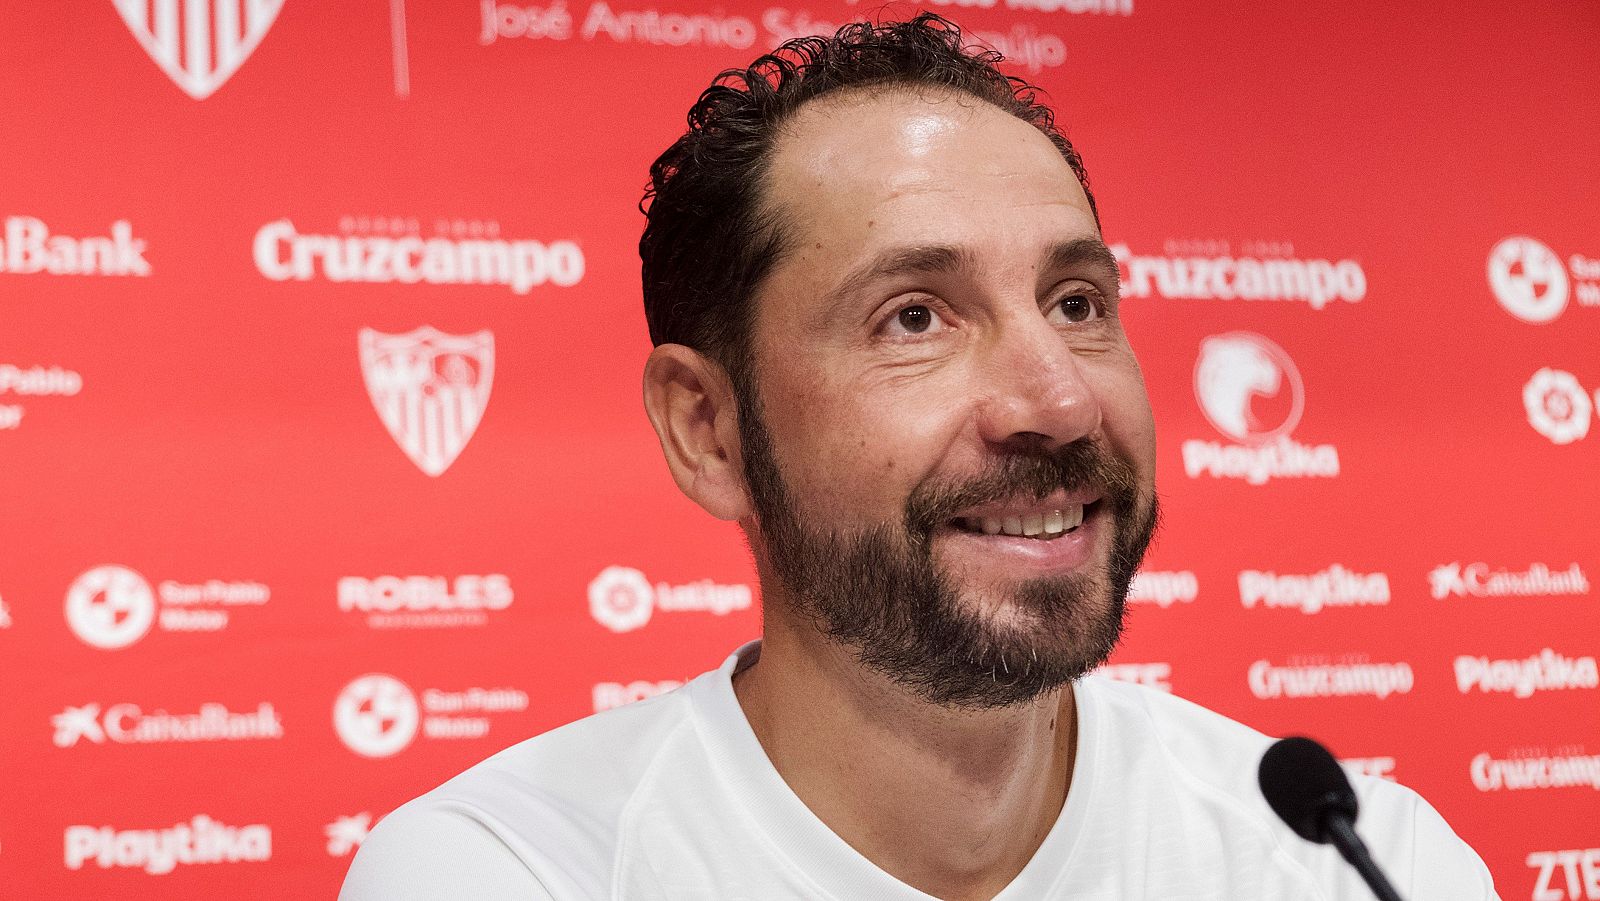 El entrenador del Sevilla, Pablo Machín, en rueda de prensa.